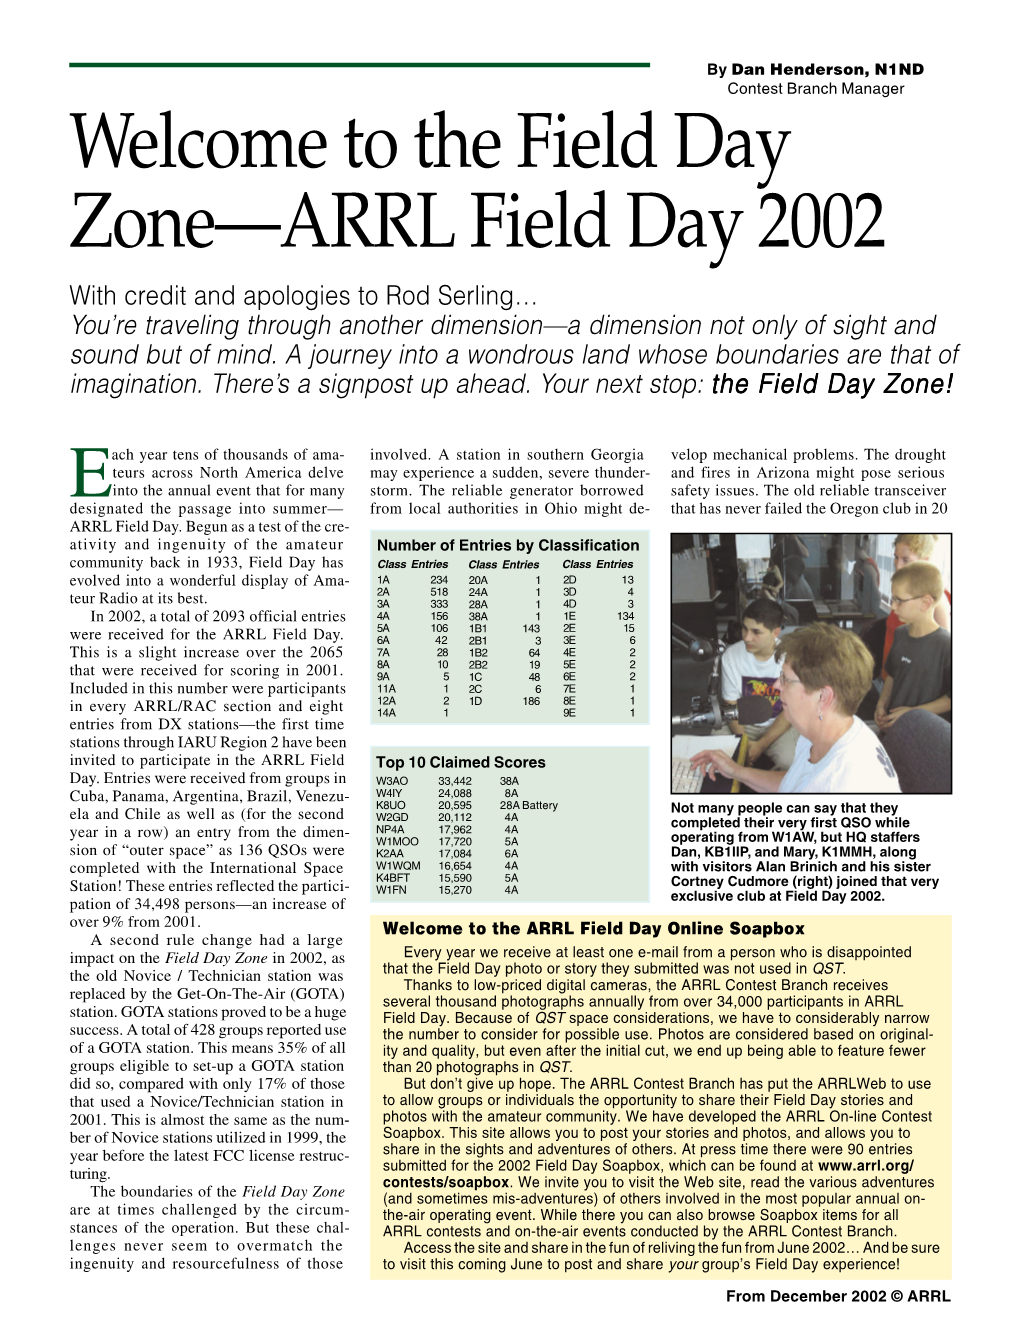 The Field Day Zone—ARRL Field Day 2002